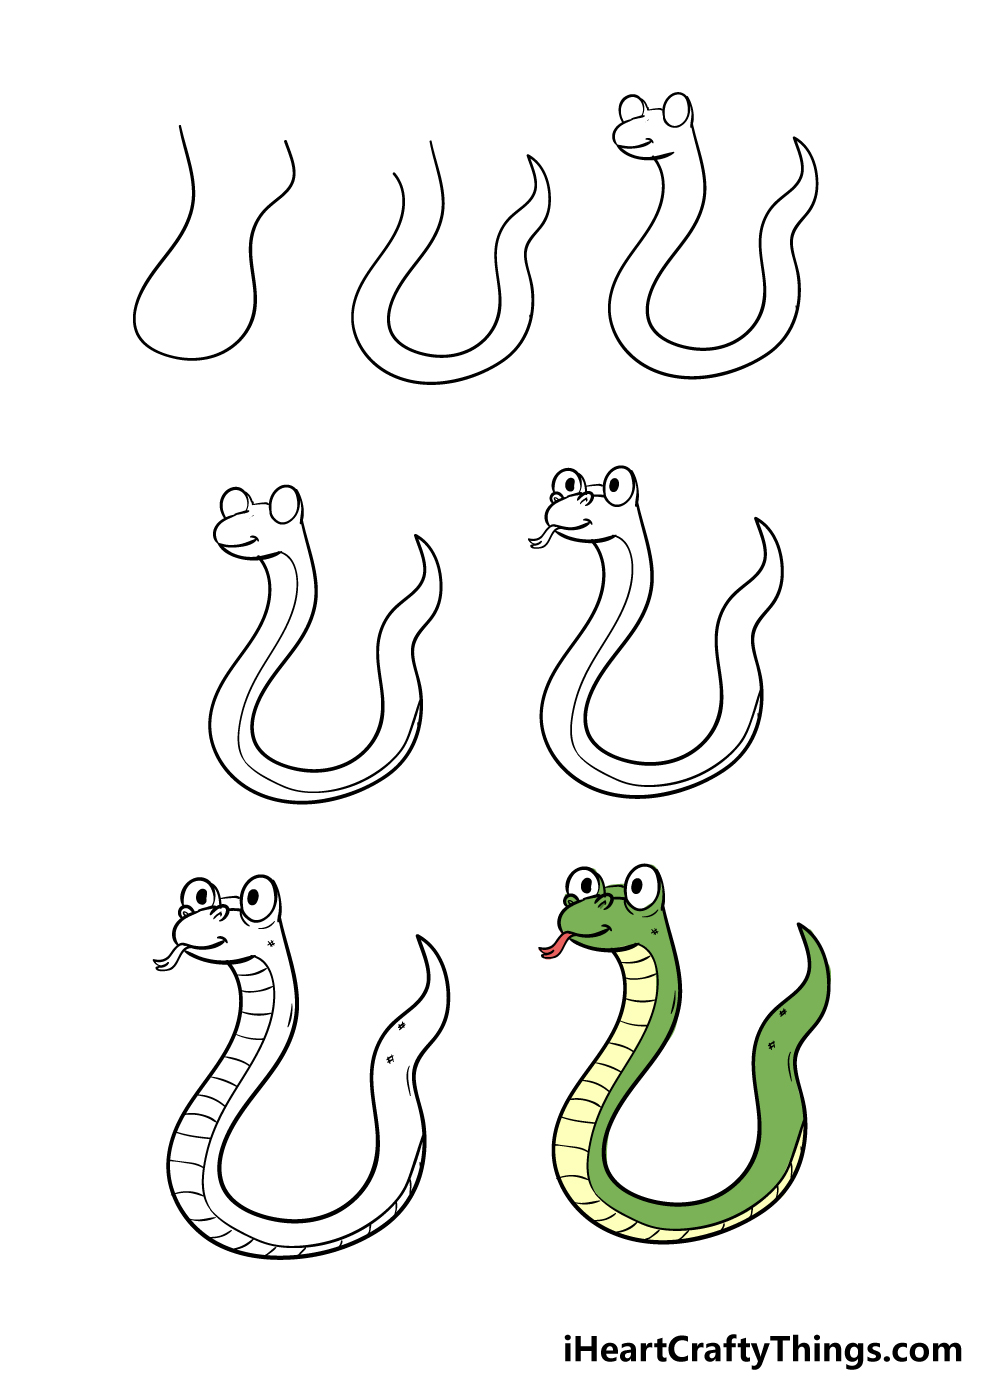 cách vẽ con rắn trong 7 bước